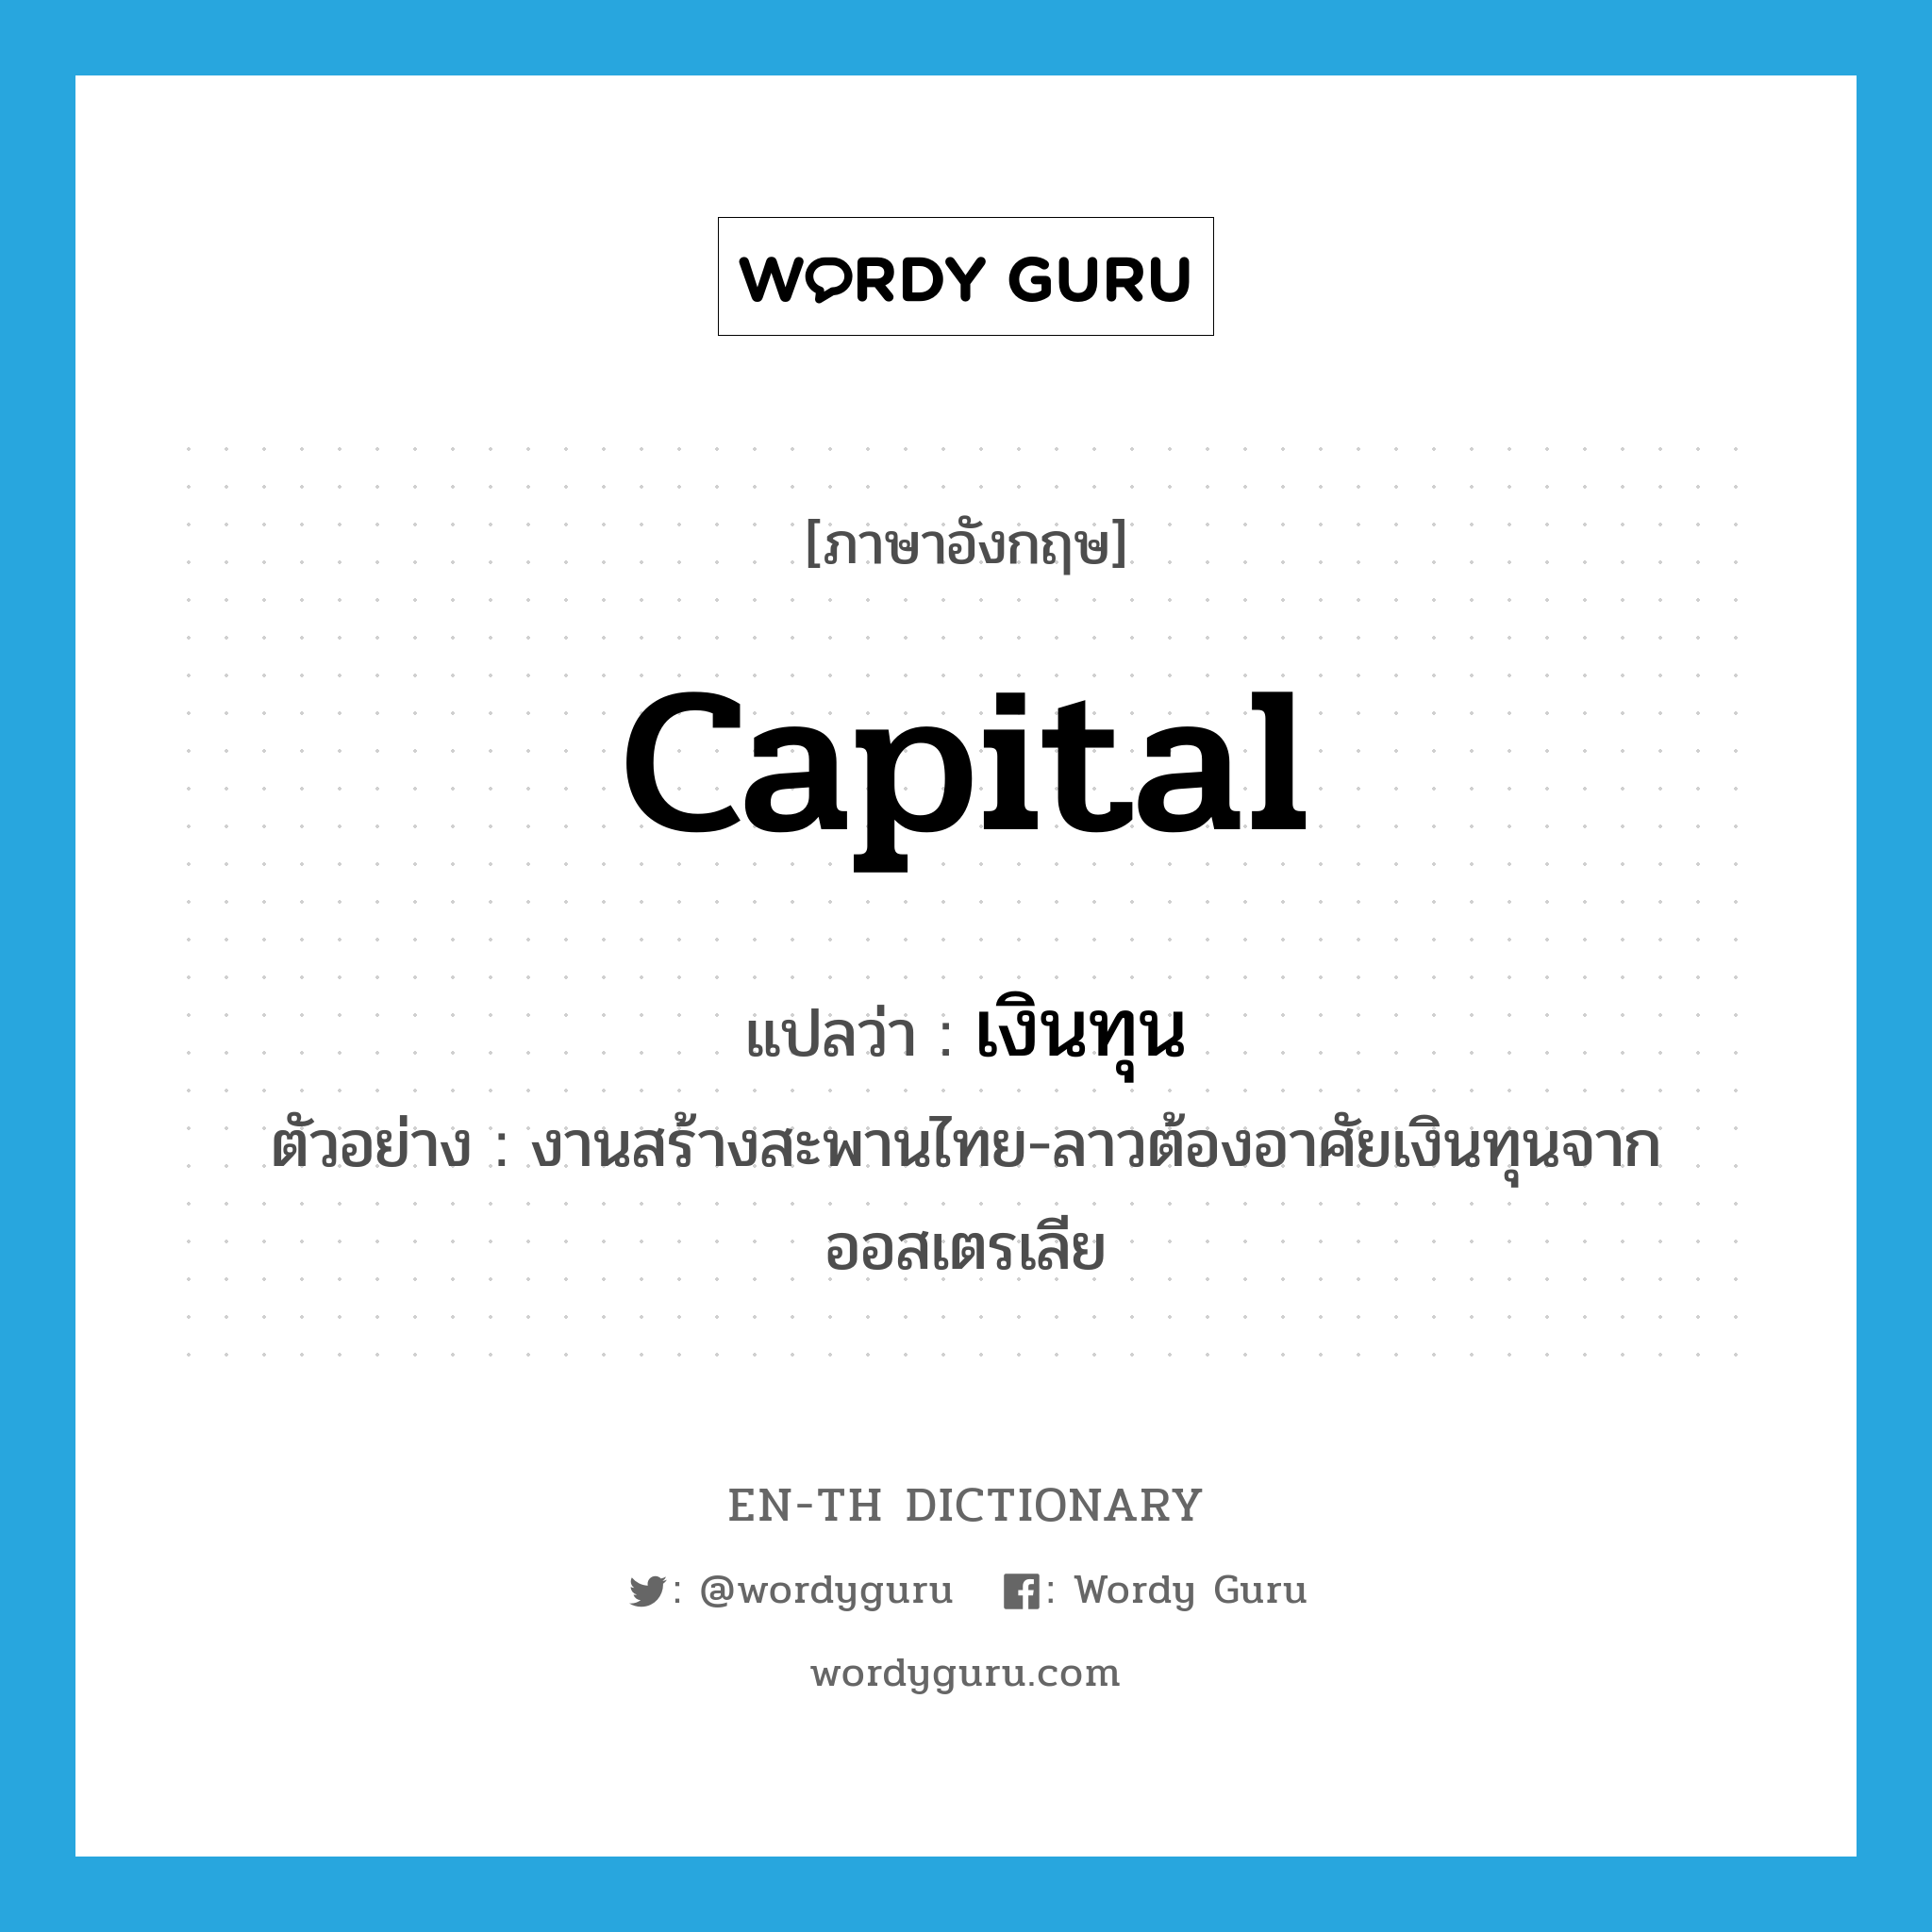 capital แปลว่า?, คำศัพท์ภาษาอังกฤษ capital แปลว่า เงินทุน ประเภท N ตัวอย่าง งานสร้างสะพานไทย-ลาวต้องอาศัยเงินทุนจากออสเตรเลีย หมวด N